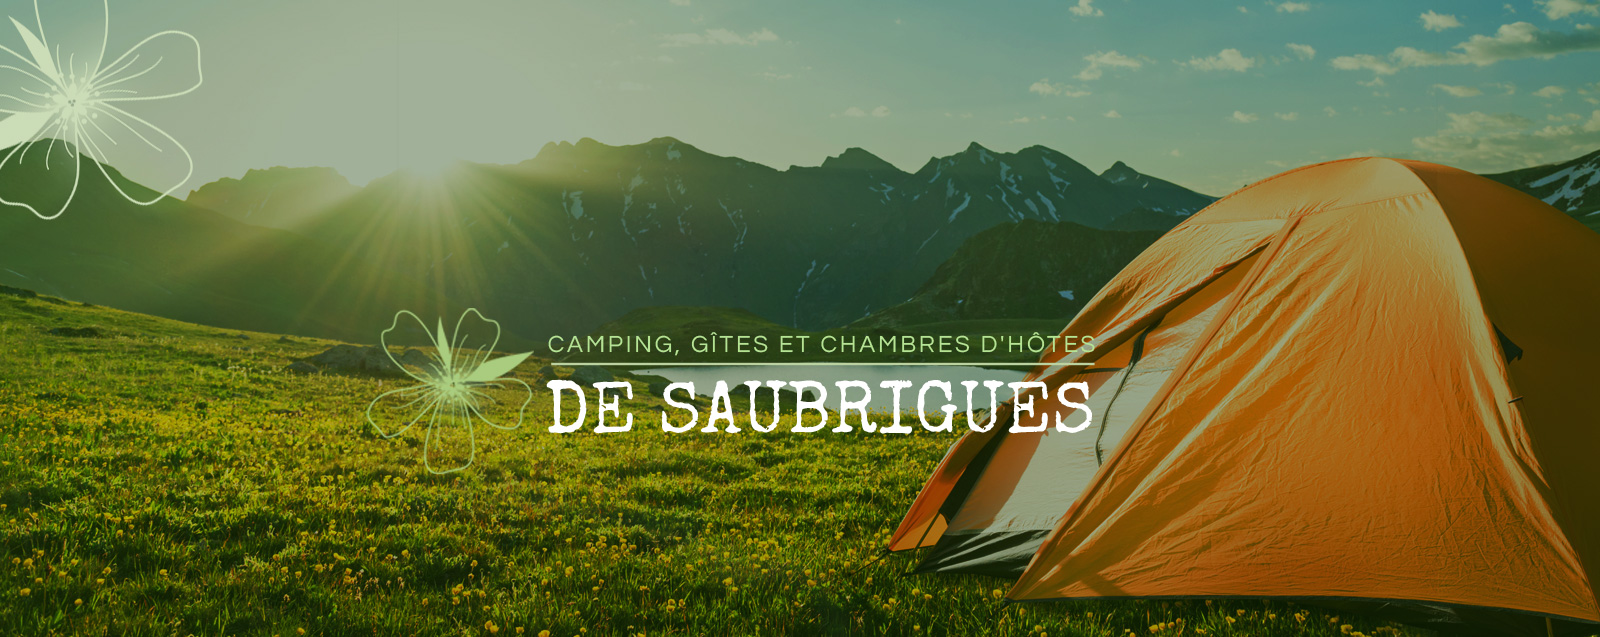 Camping, gîtes et chambres d’hôtes de Saubrigues